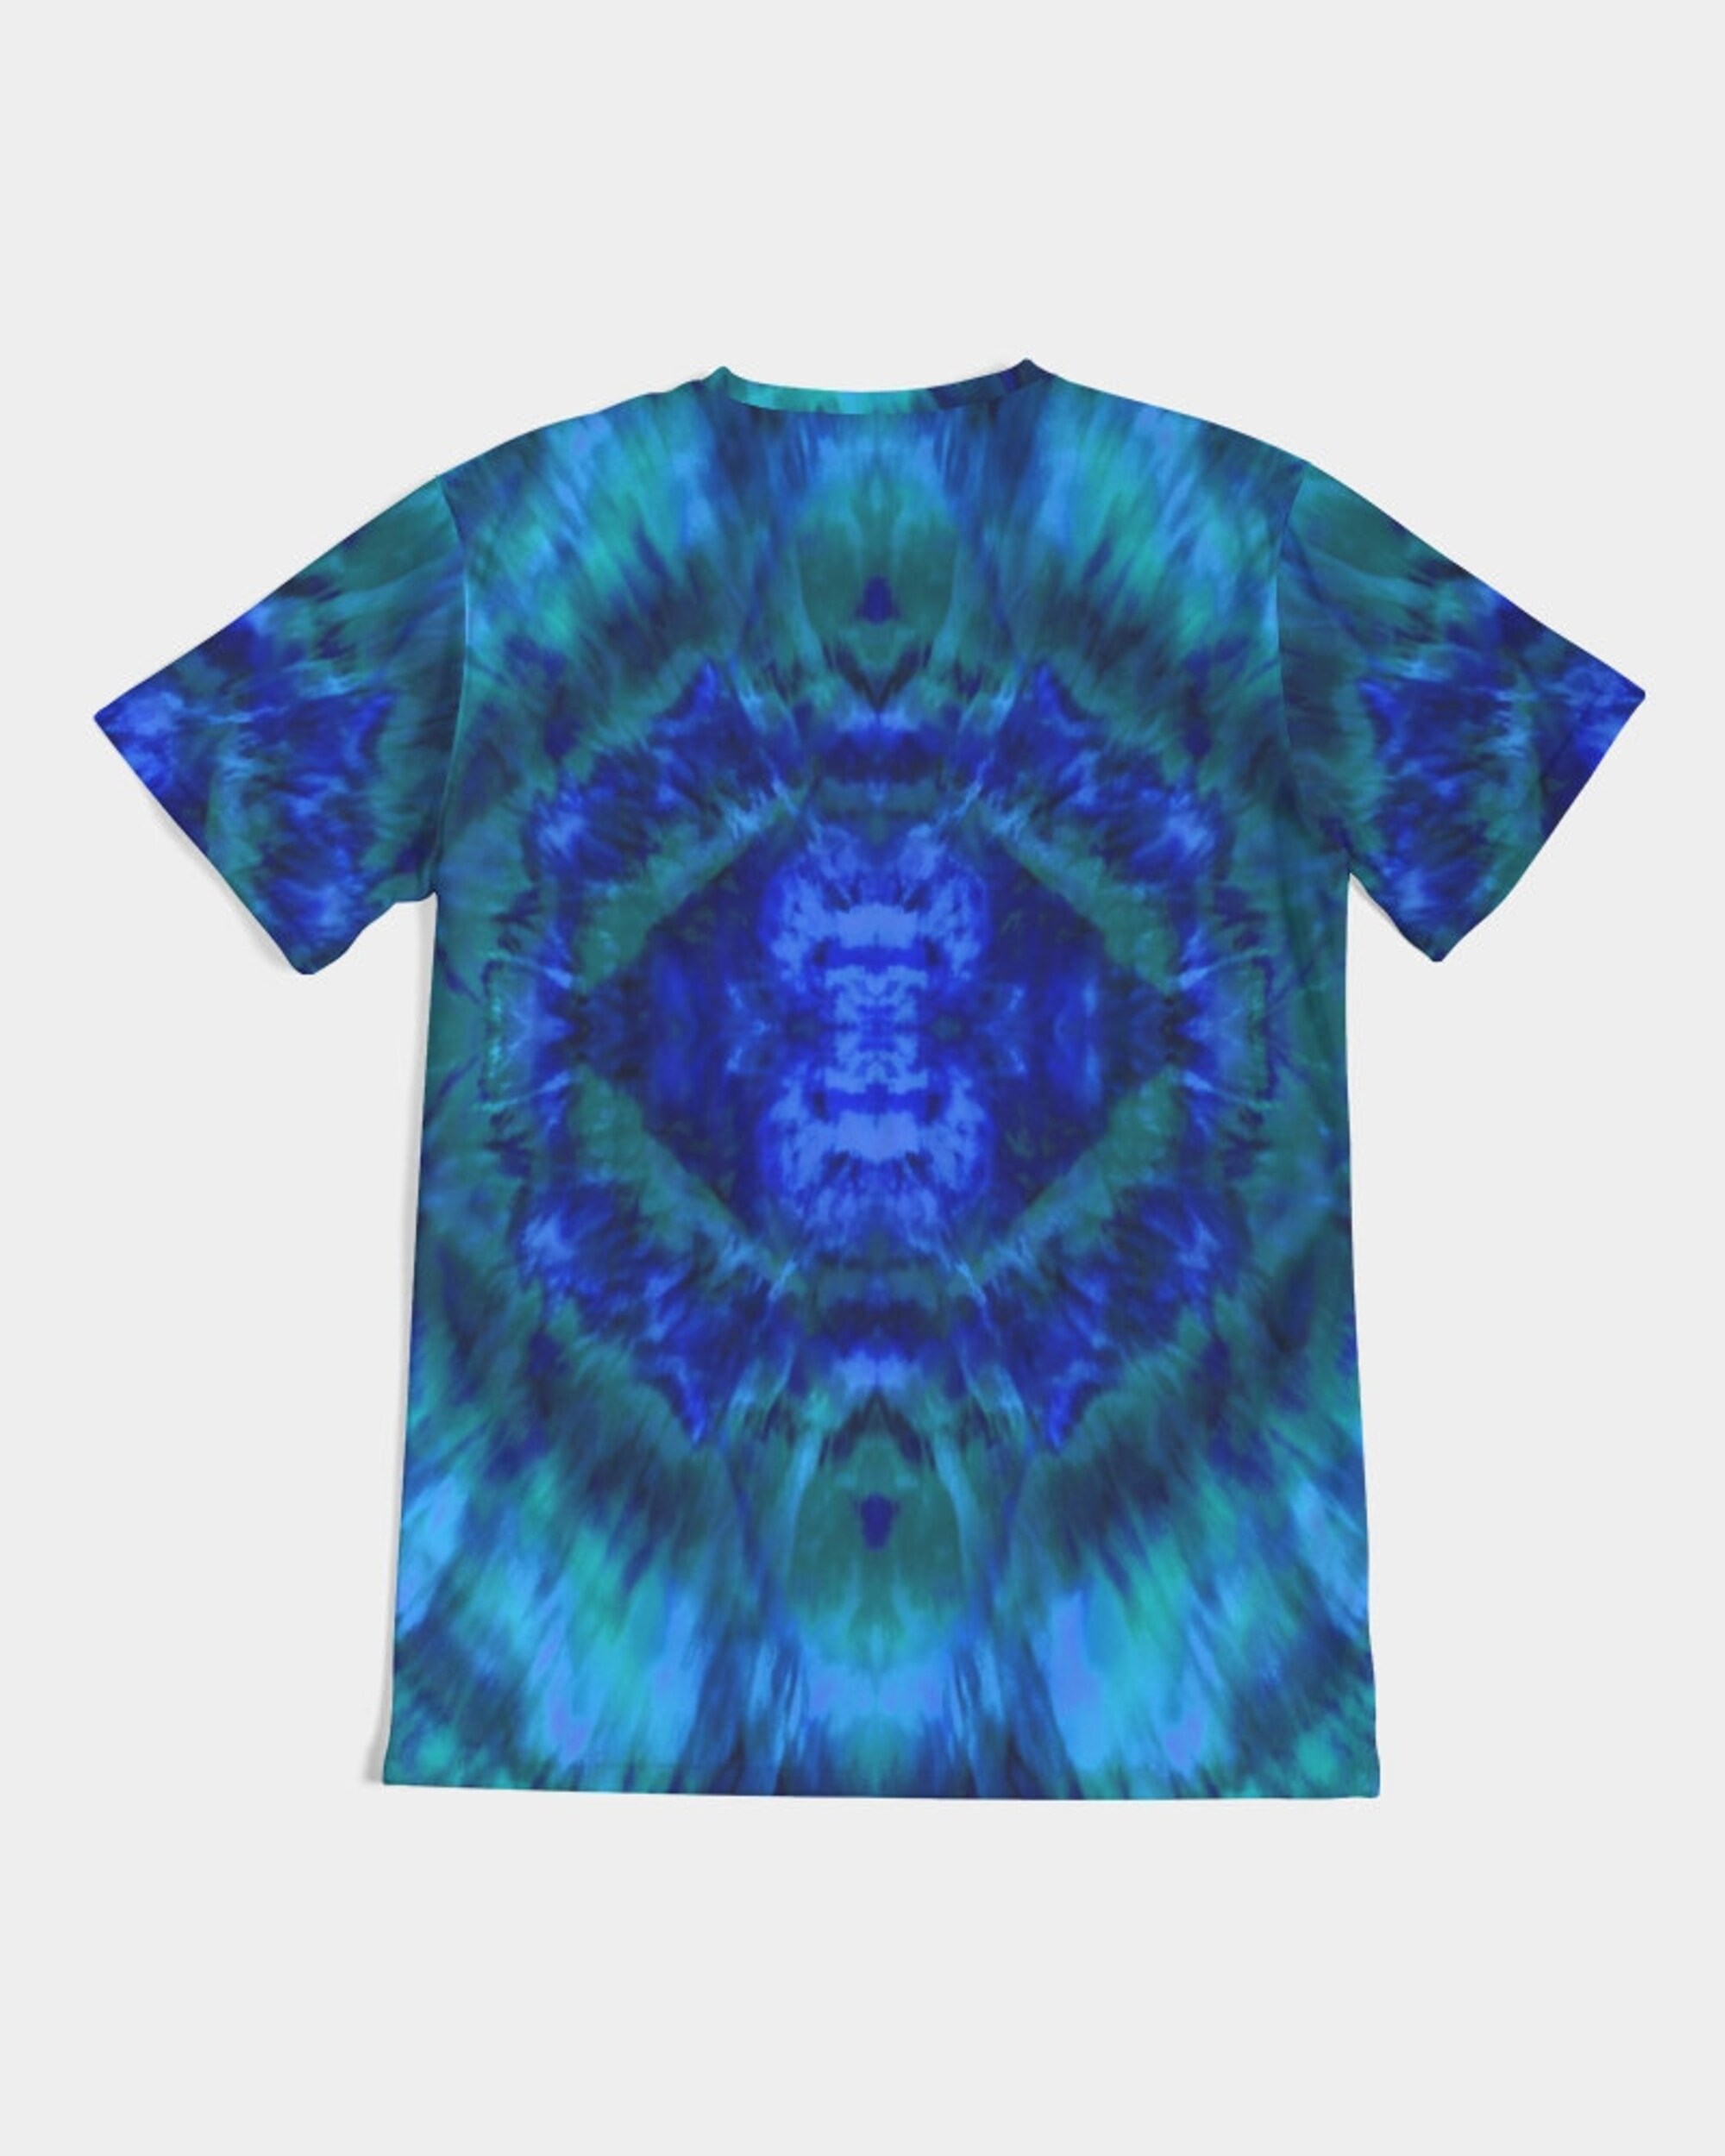 Psychedelic Hippie Shibori Tye Dye 3D T Shirt